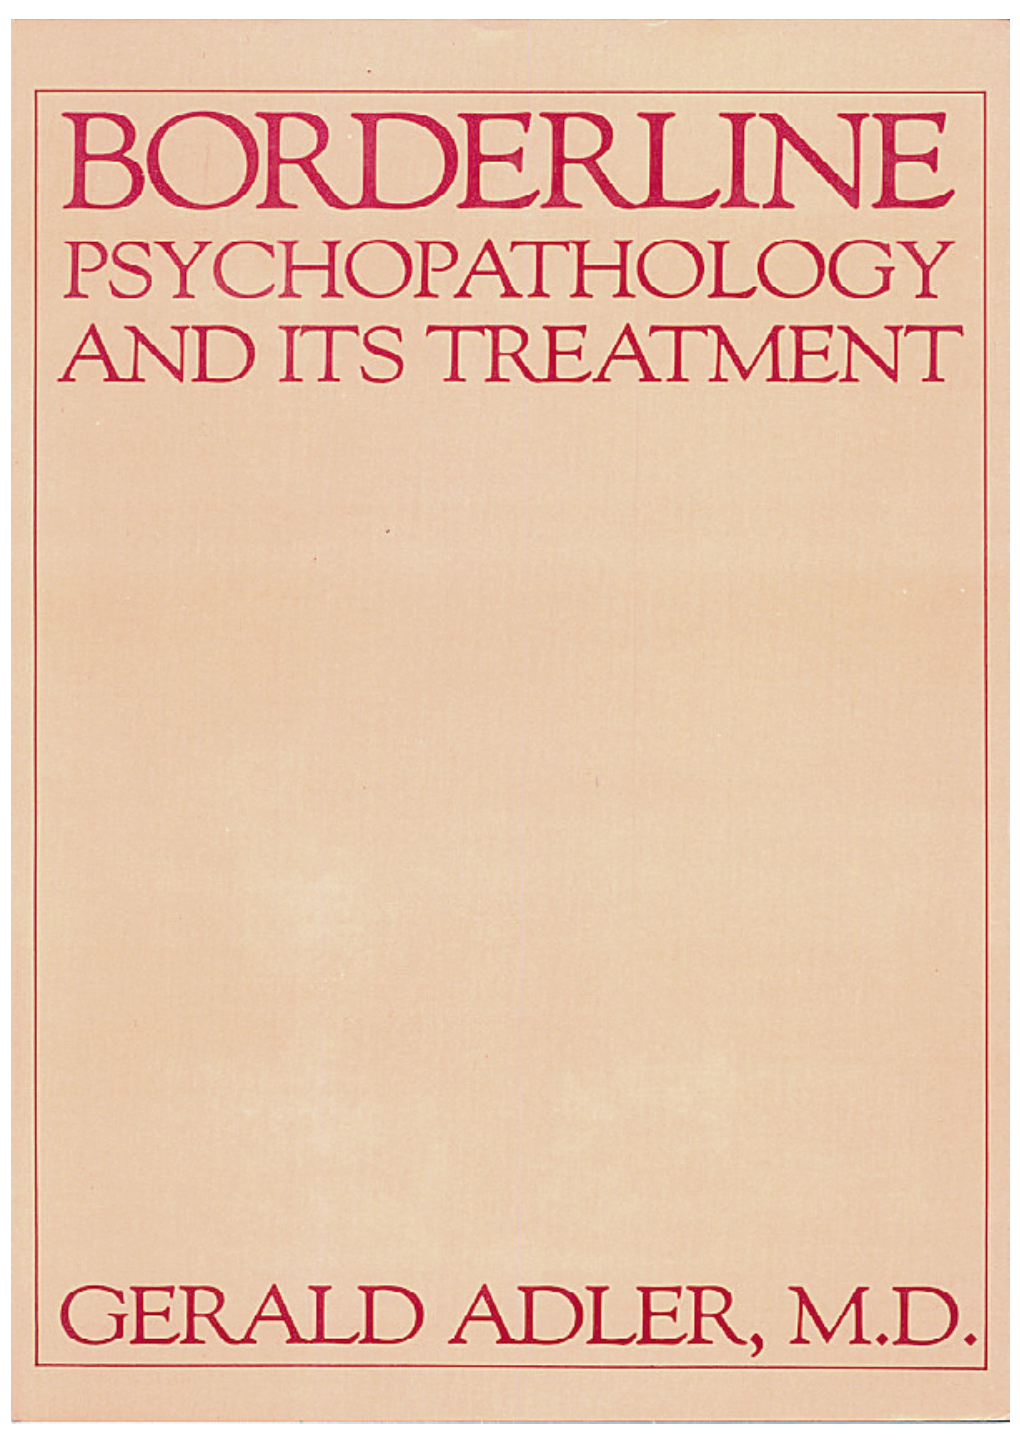 Three Psychodynamics of Borderline Psychopathology